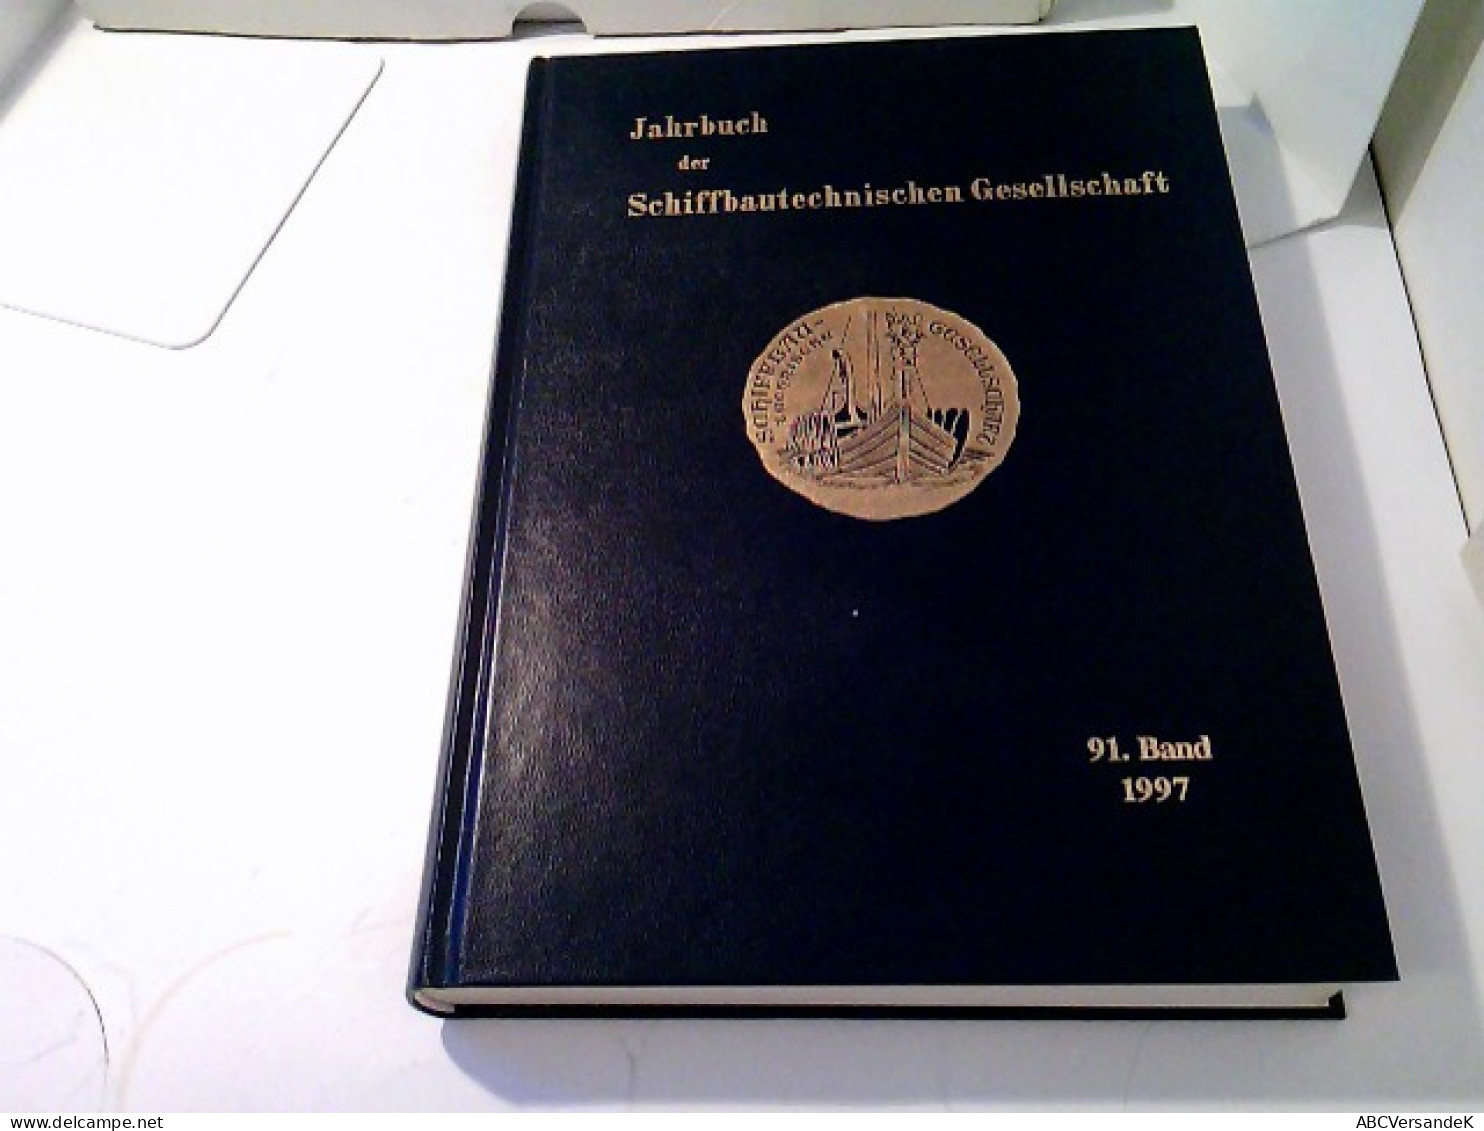 Jahrbuch Der Schiffbautechnischen Gesellschaft 91.Band 1997 - Verkehr